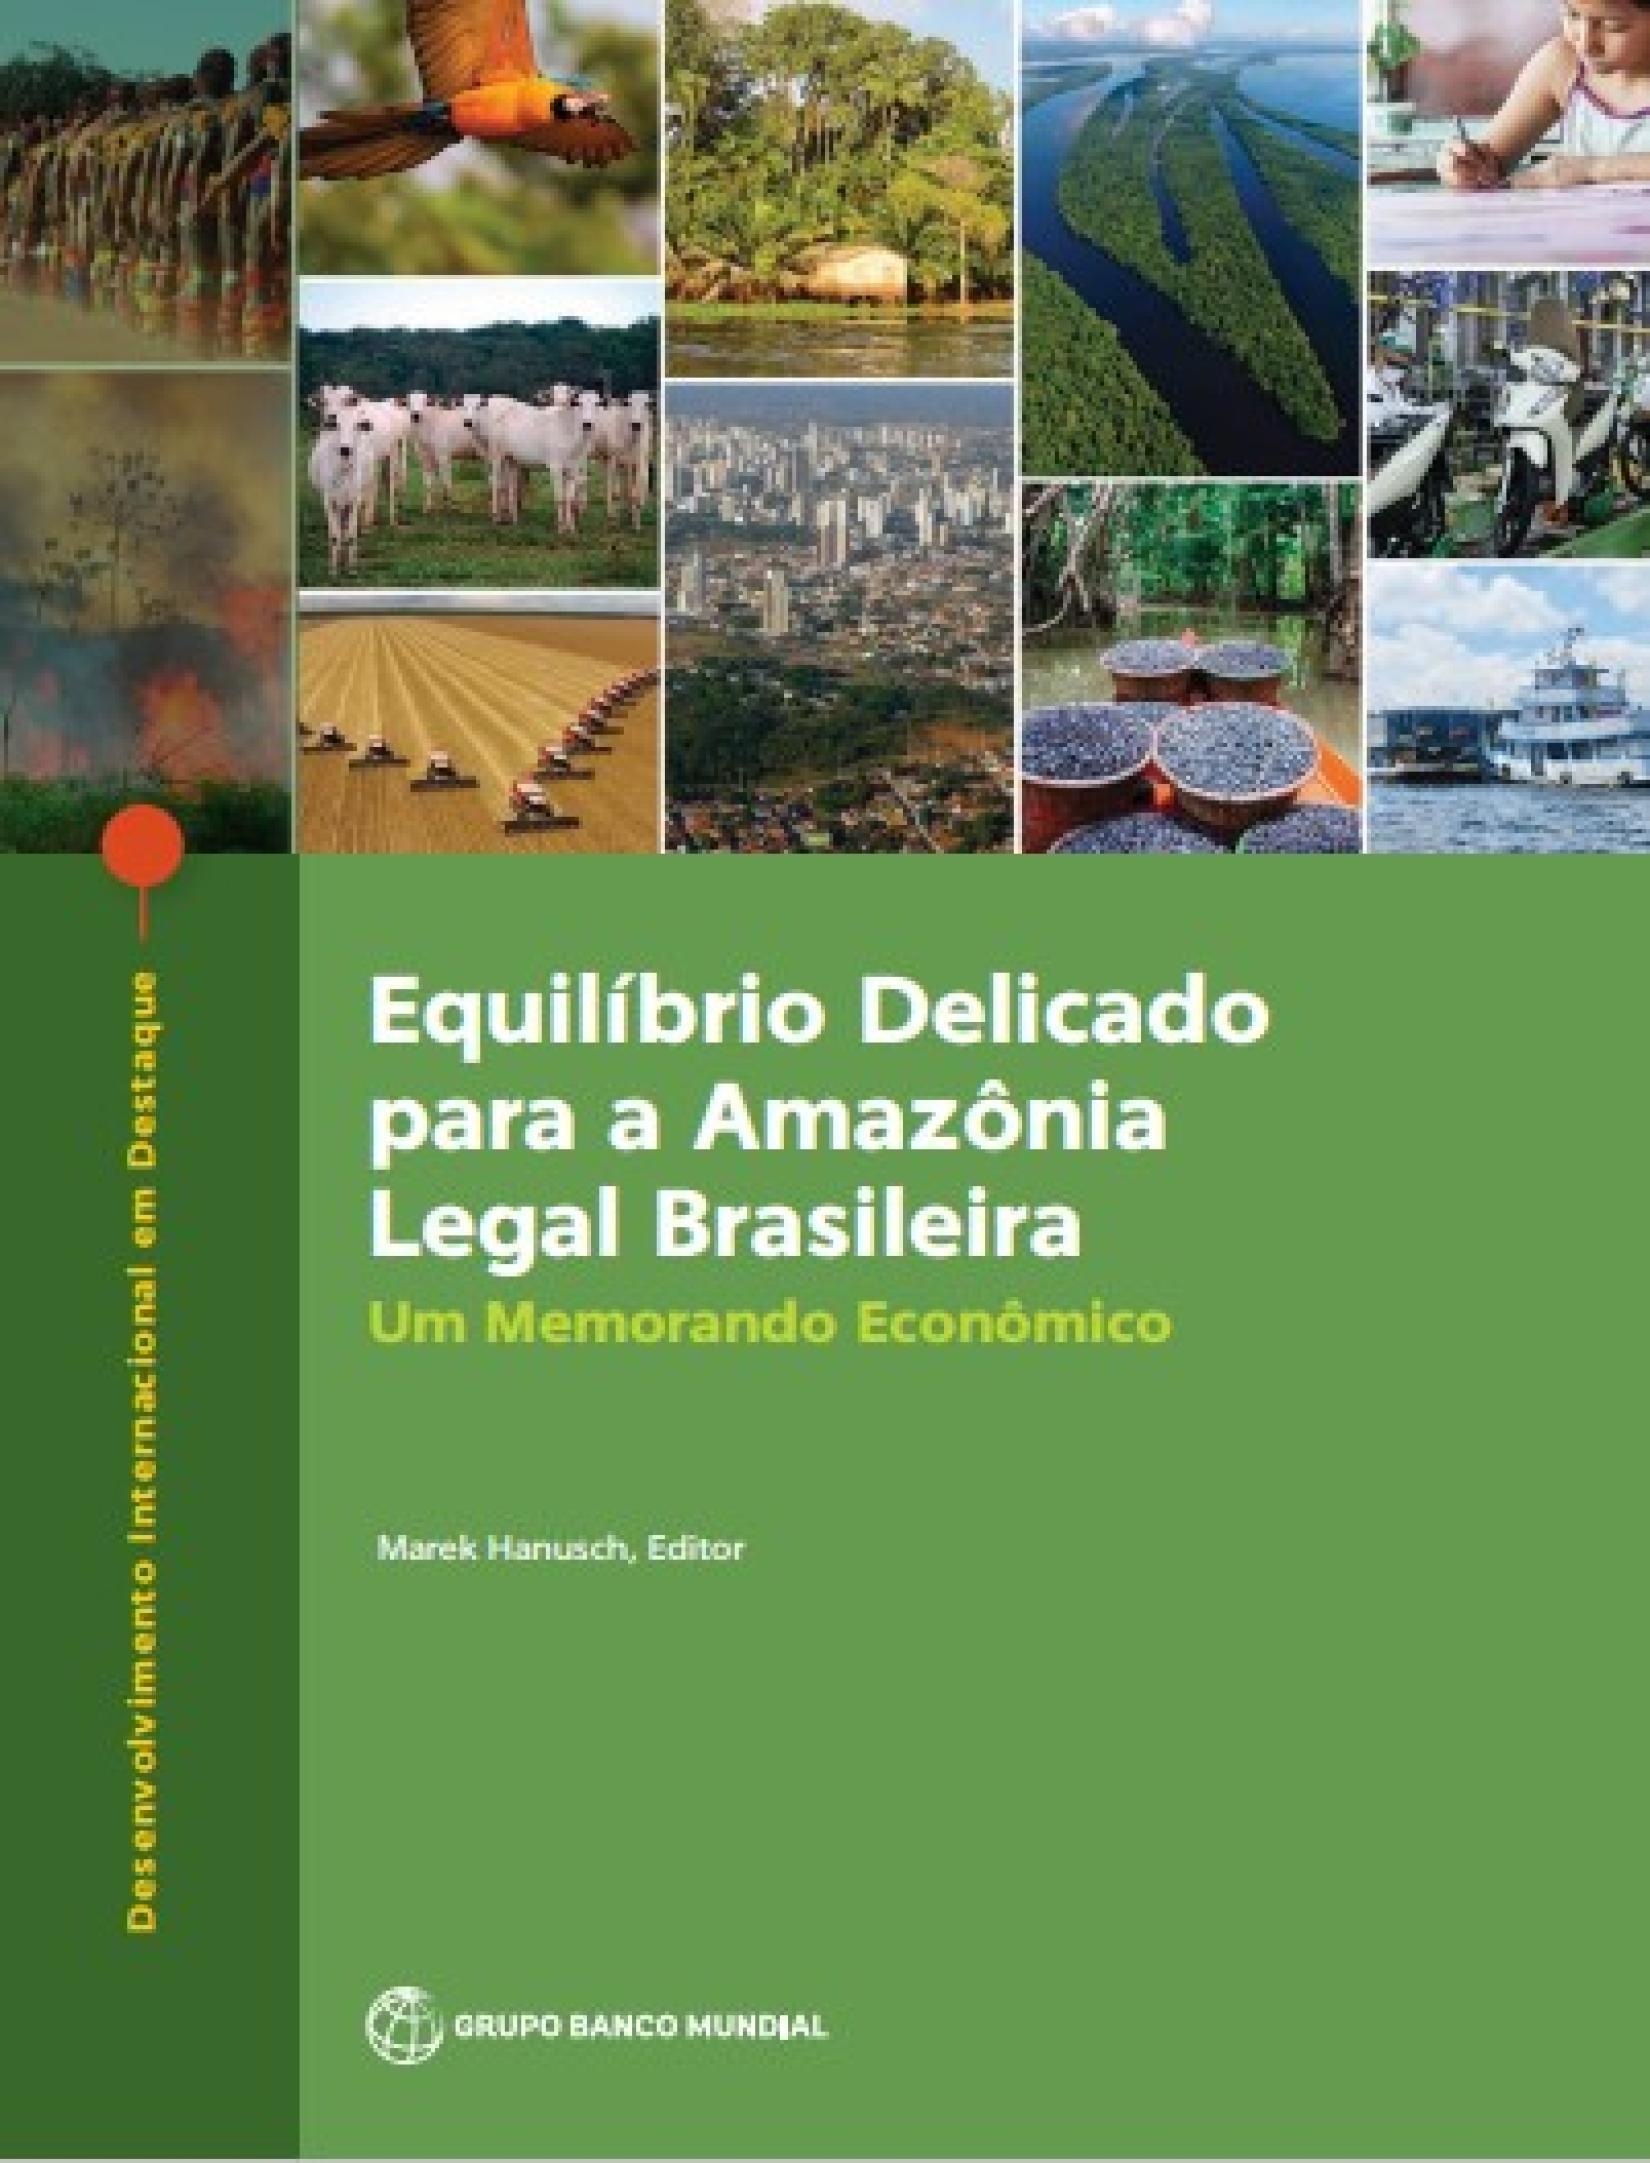 Equilíbrio Delicado para a Amazônia Legal Brasileira - Um Memorando Econômico